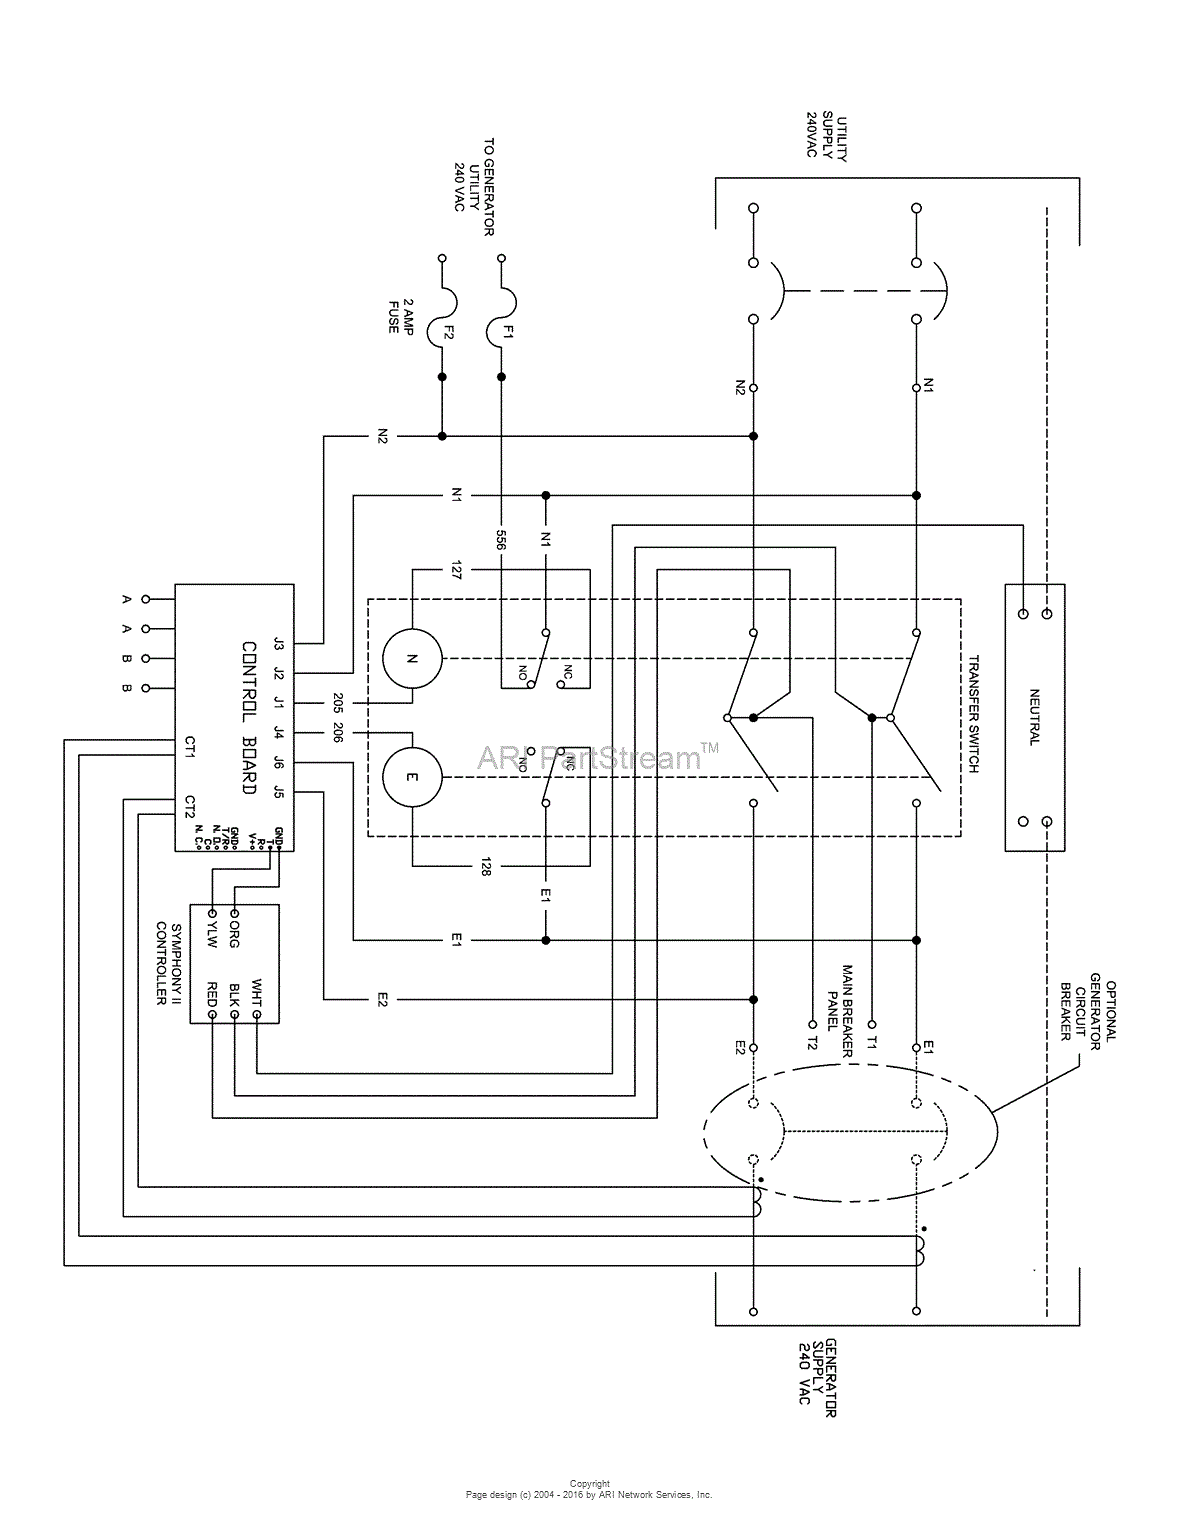 Generac Generator Wiring Diagram from schematron.org